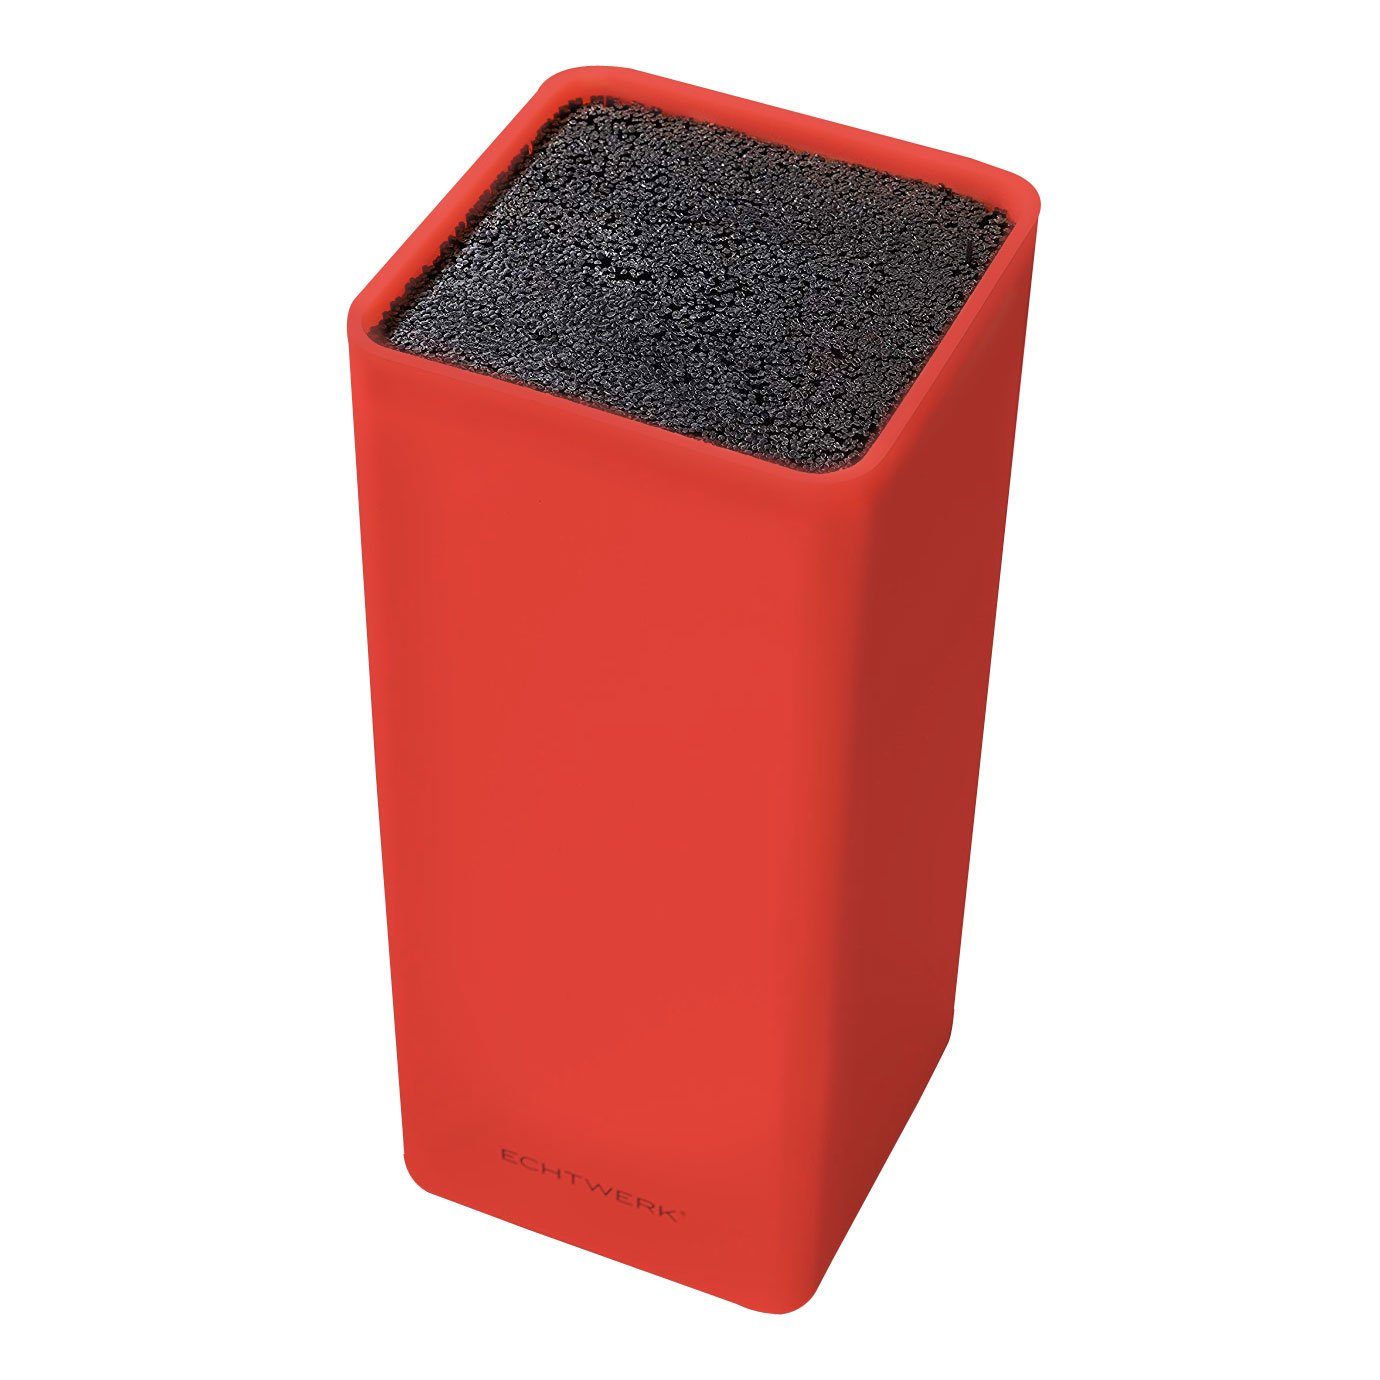 Messerblock ECHTWERK mit Kunststoff Rot, Square, Borsteneinsatz, Universal-Messerblock